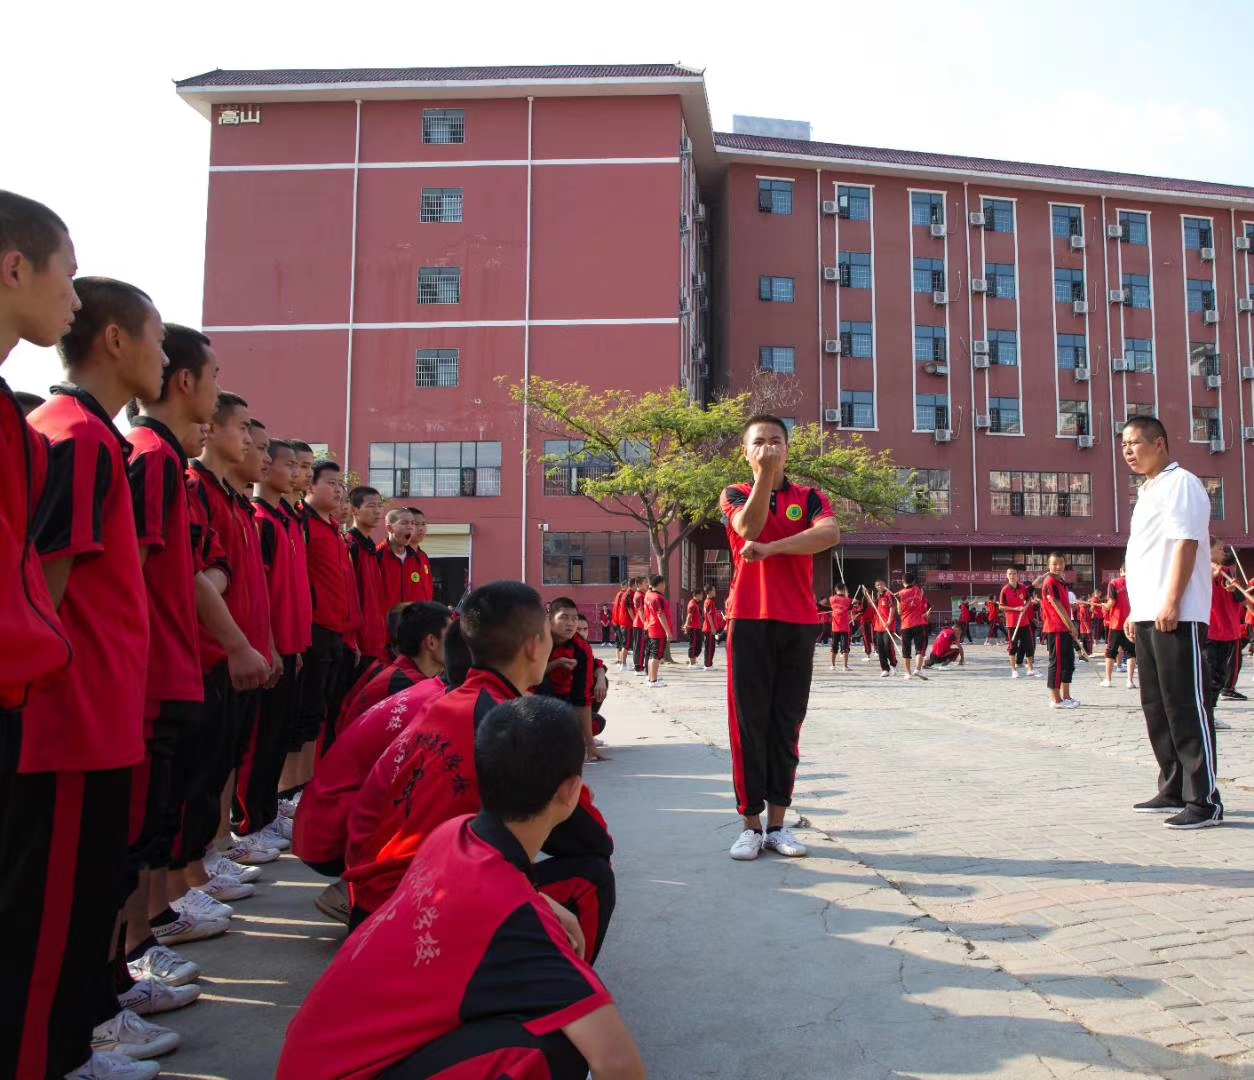 嵩山少林寺武术学校的学员在展示个人武艺